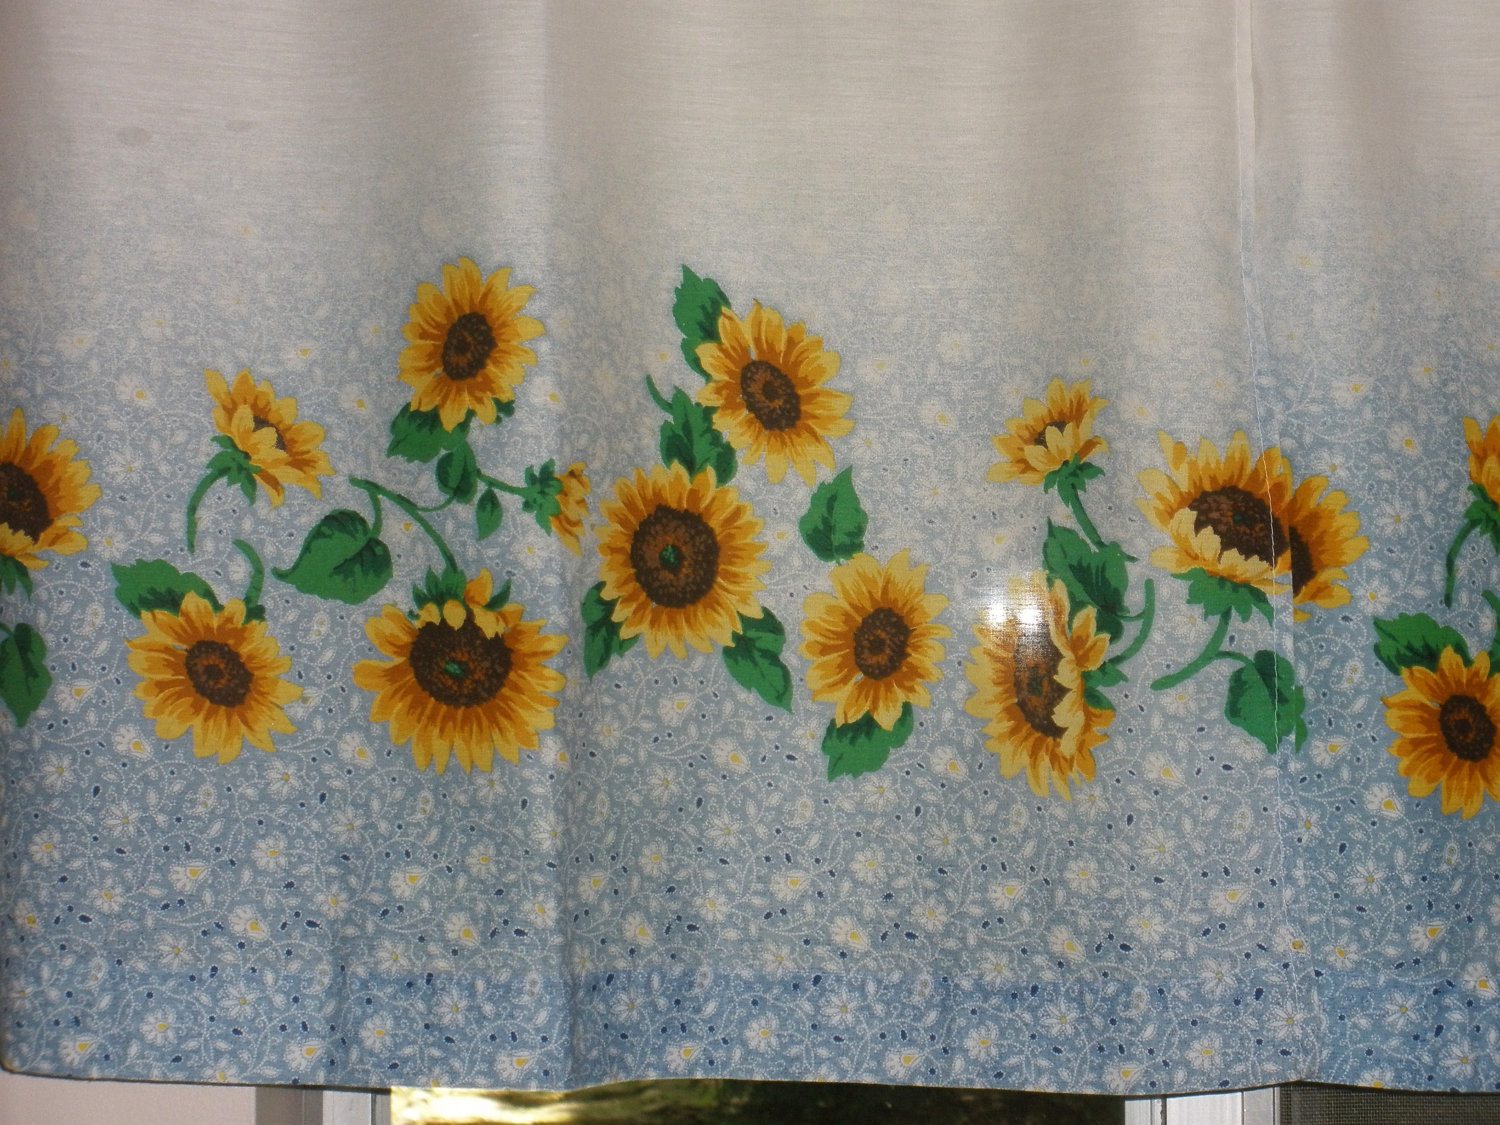 Sunflower Kitchen Curtains
 11 DIY Sunflower Kitchen Decor Ideas